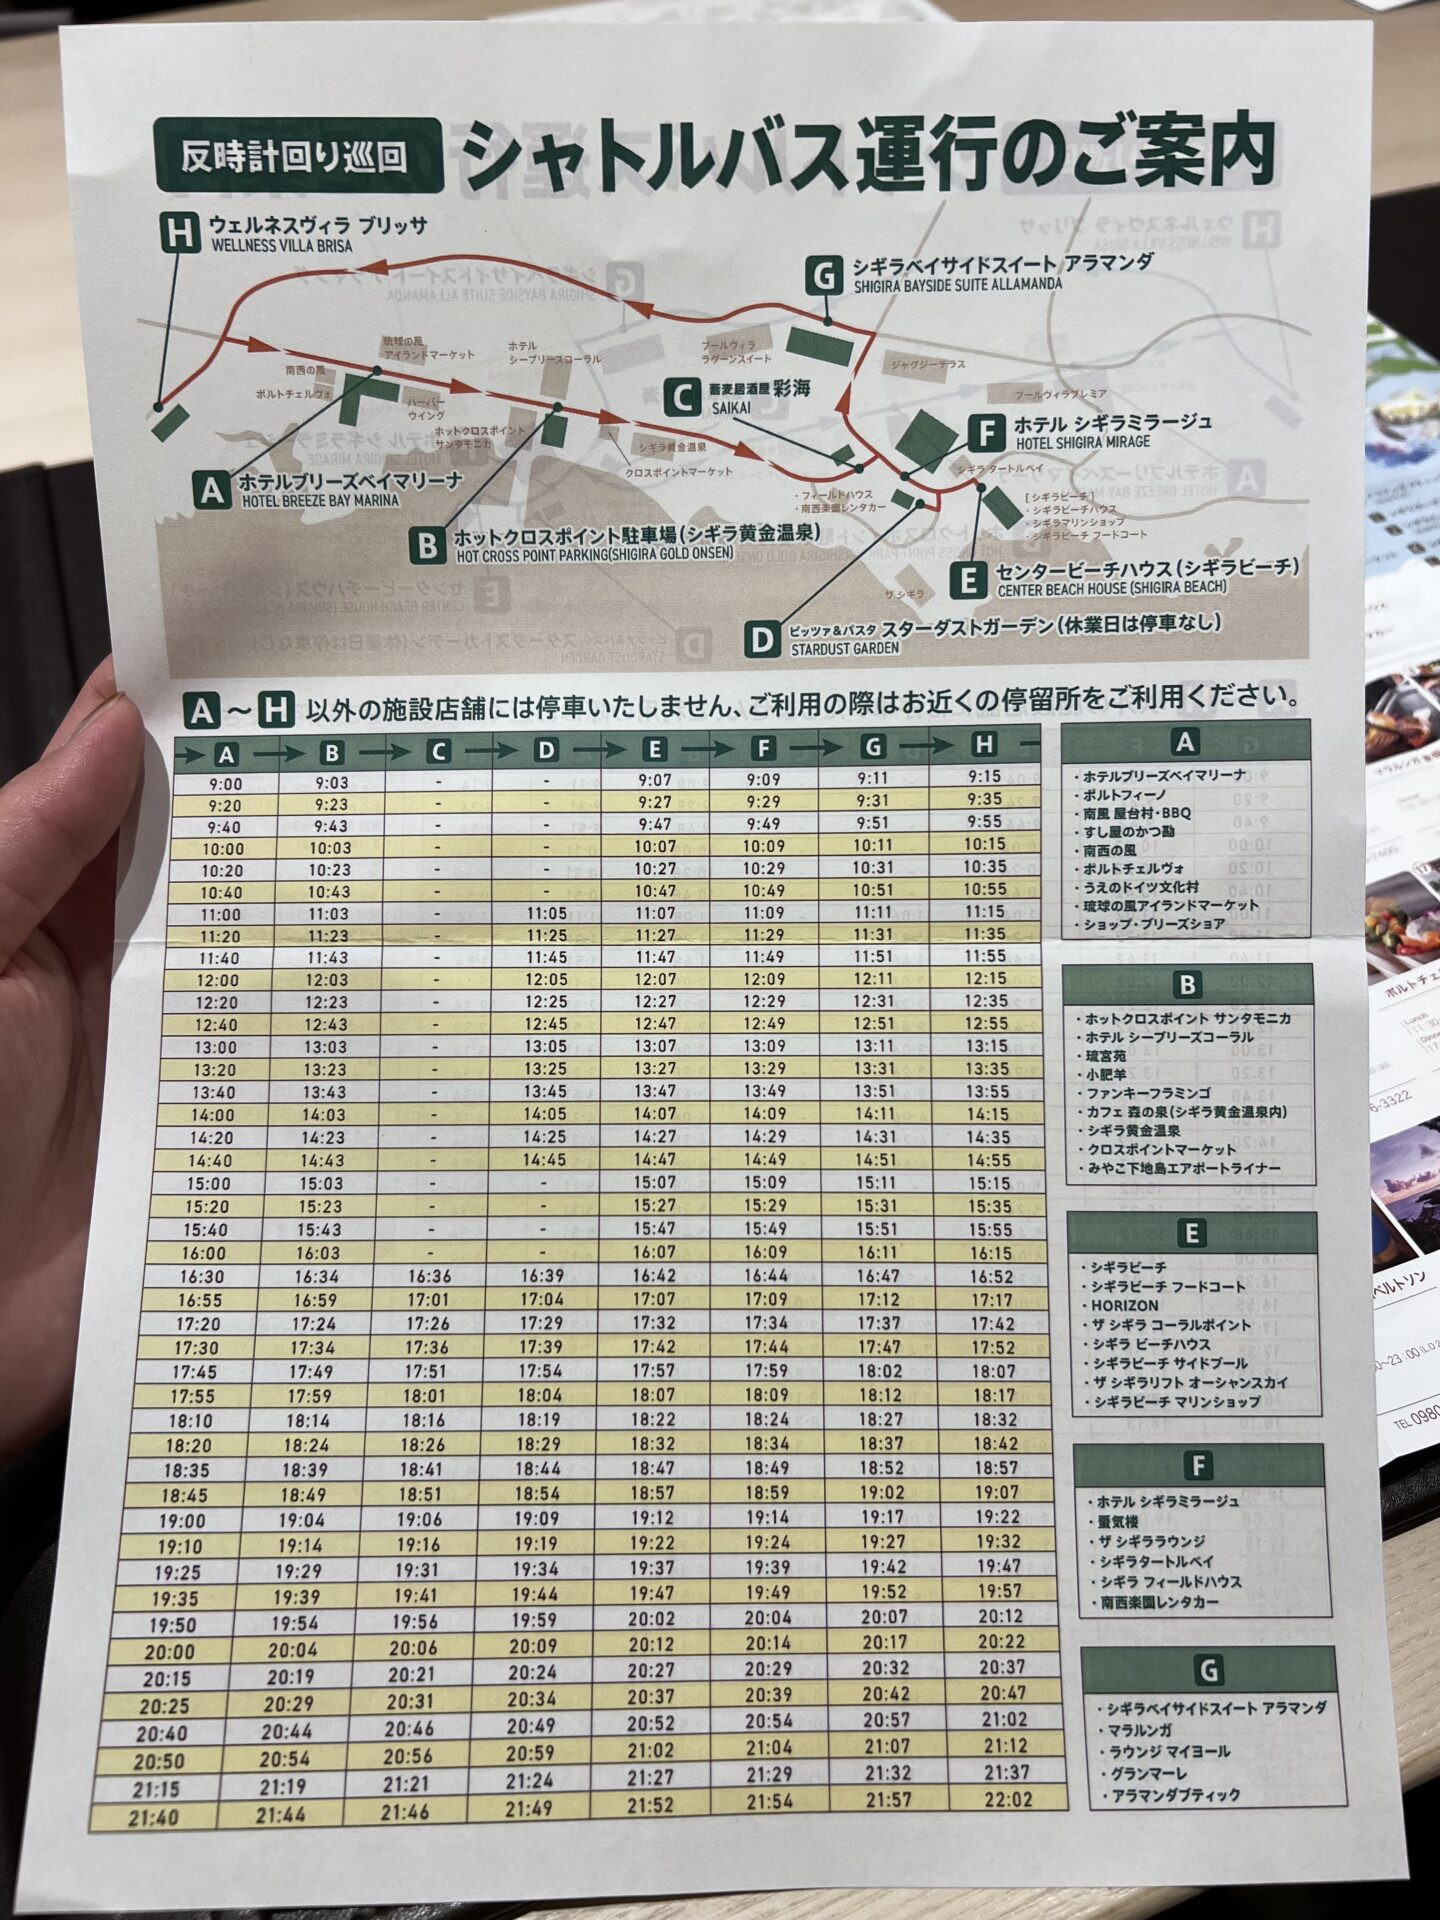 HOTEL SHIGIRA MIRAGE シャトルバス時刻表（反時計周り）